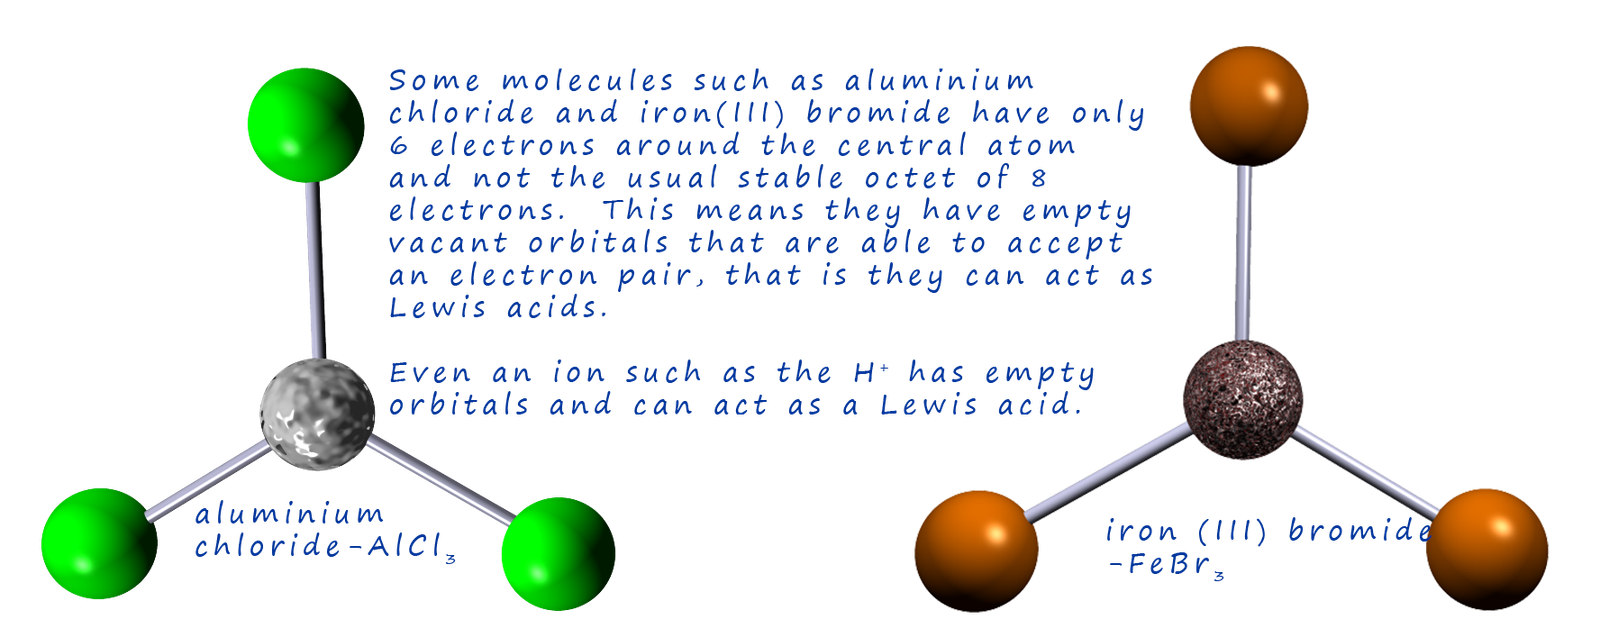 3d representations of Lewis acid molecules